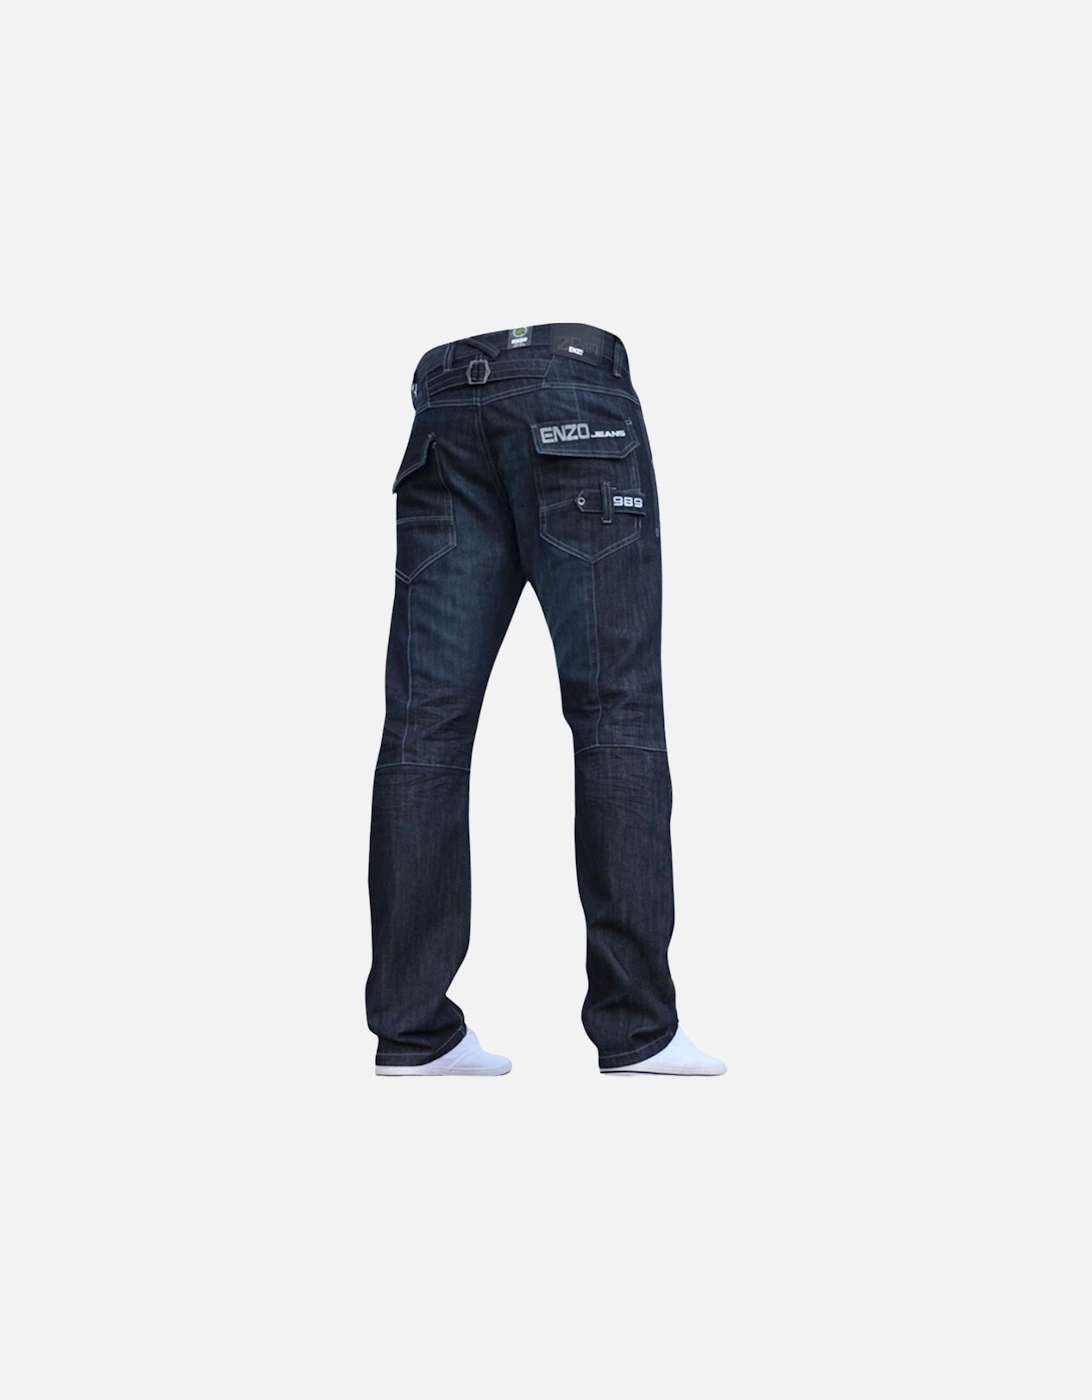 EZ244DSW Dark Blue Jeans